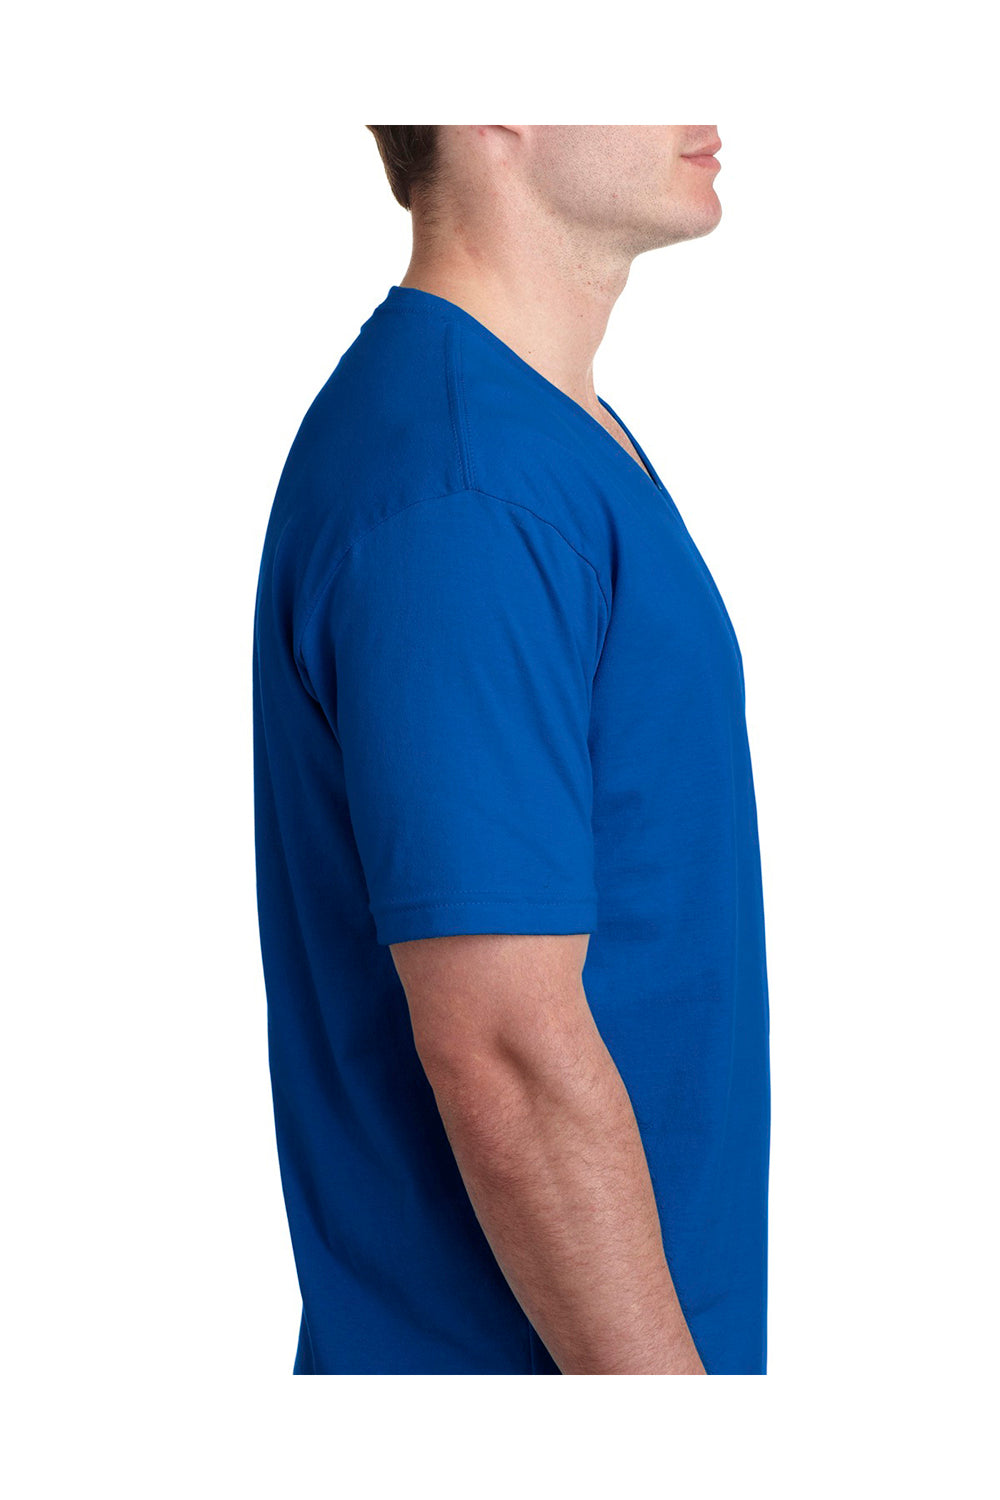 Next Level N3200 Mens Fine Jersey Short Sleeve V-Neck T-Shirt Royal Blue Side